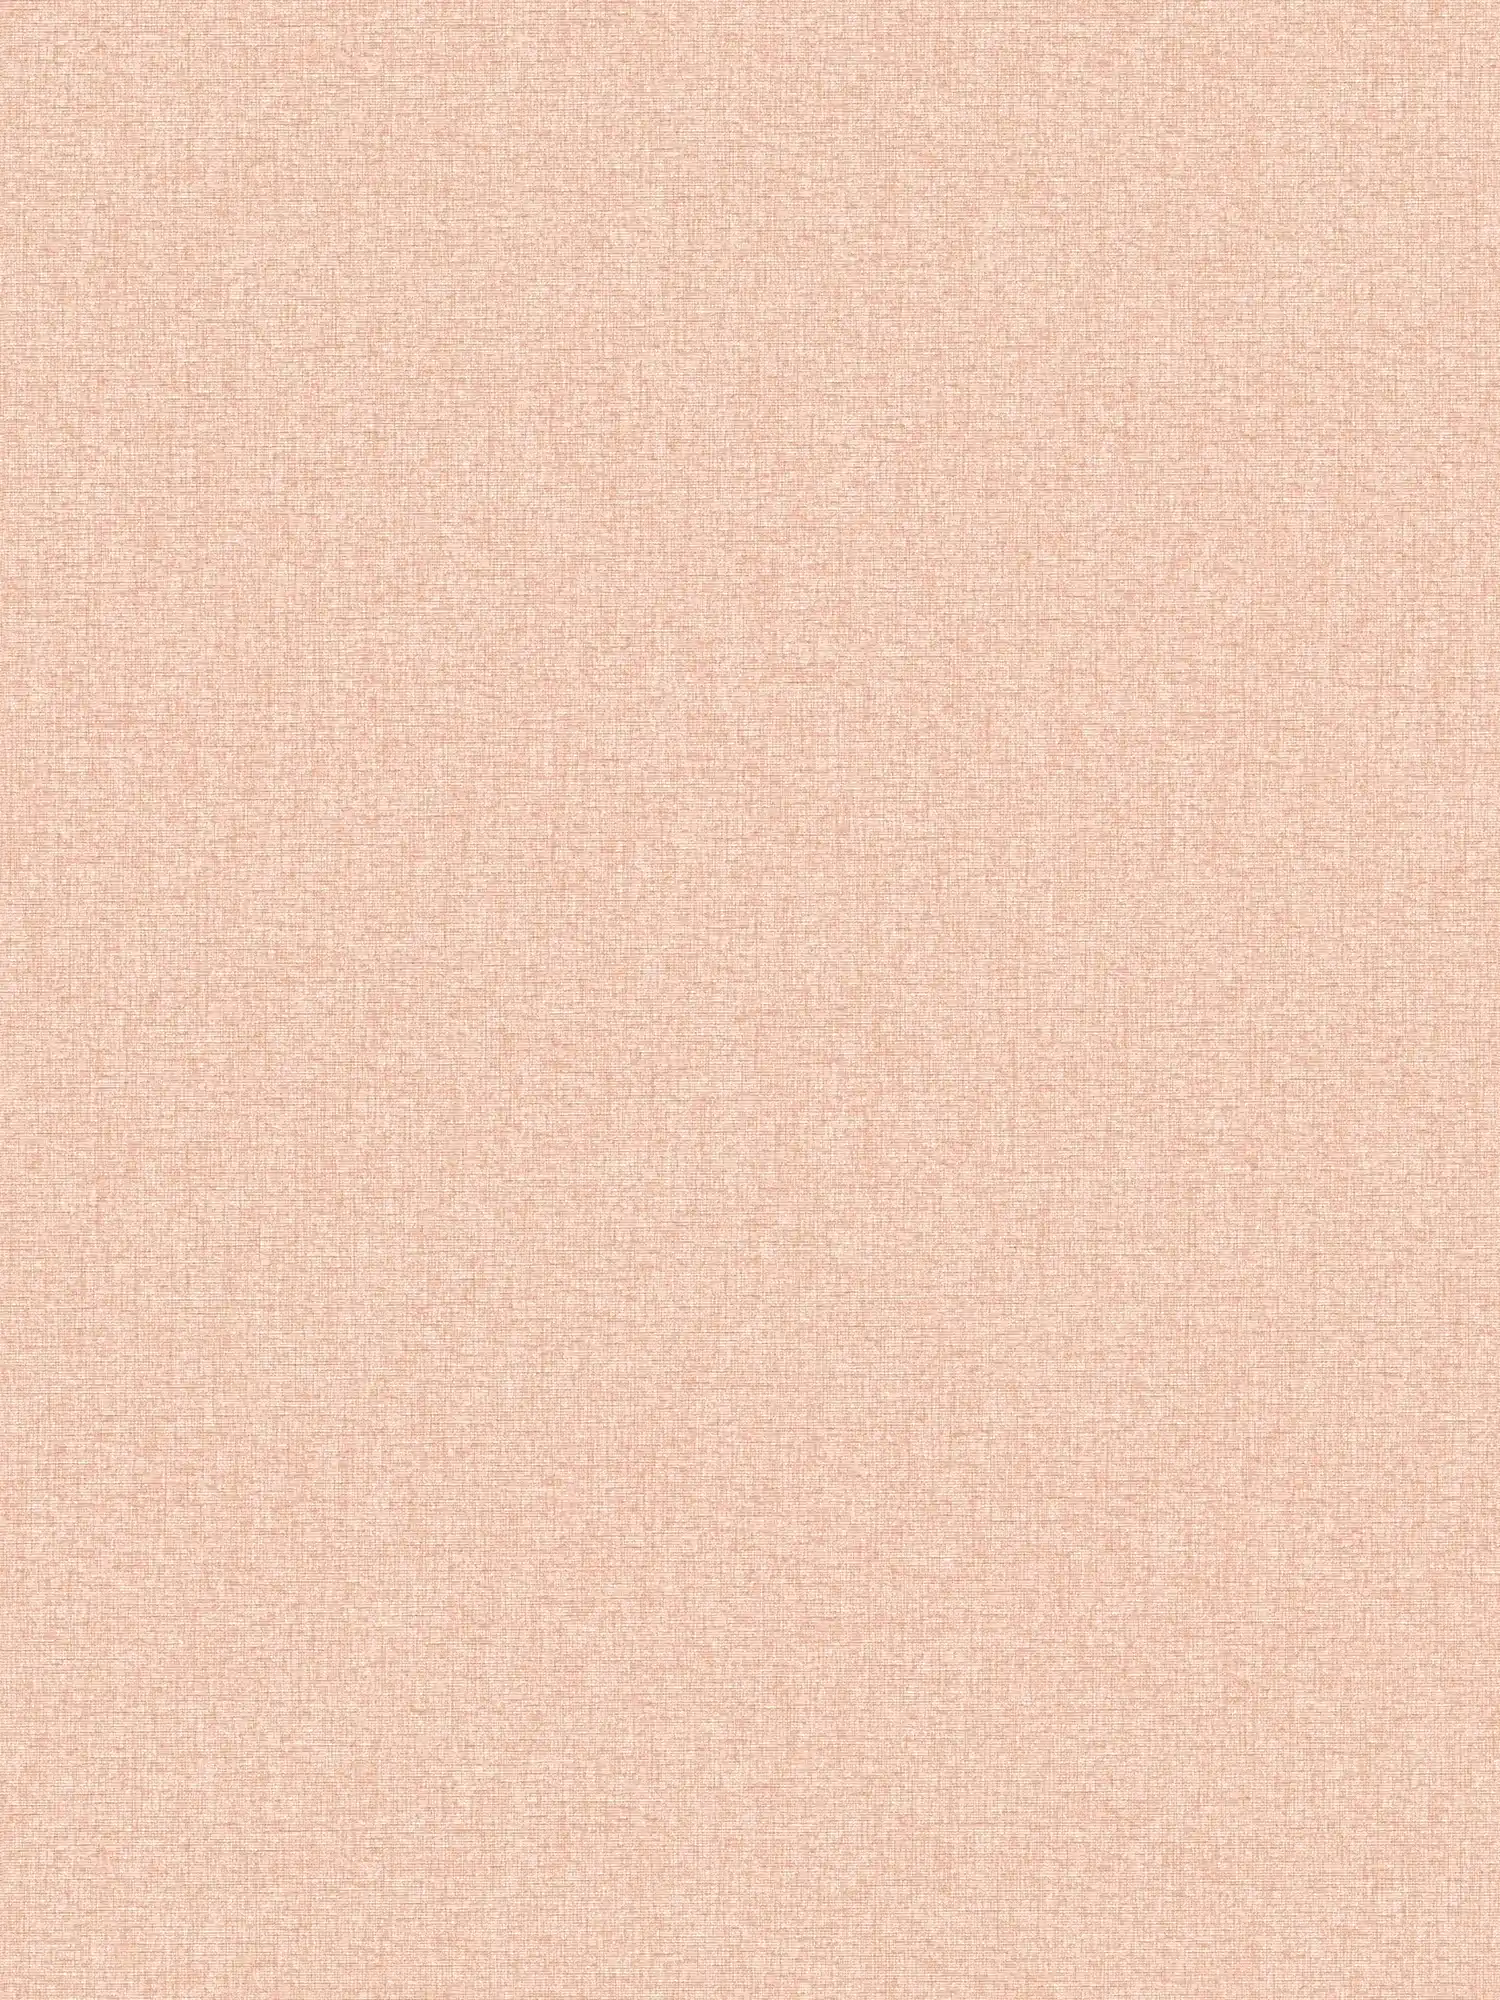 Vliestapete mit Strukturdesign einfarbig, matt – Orange, Rosa
